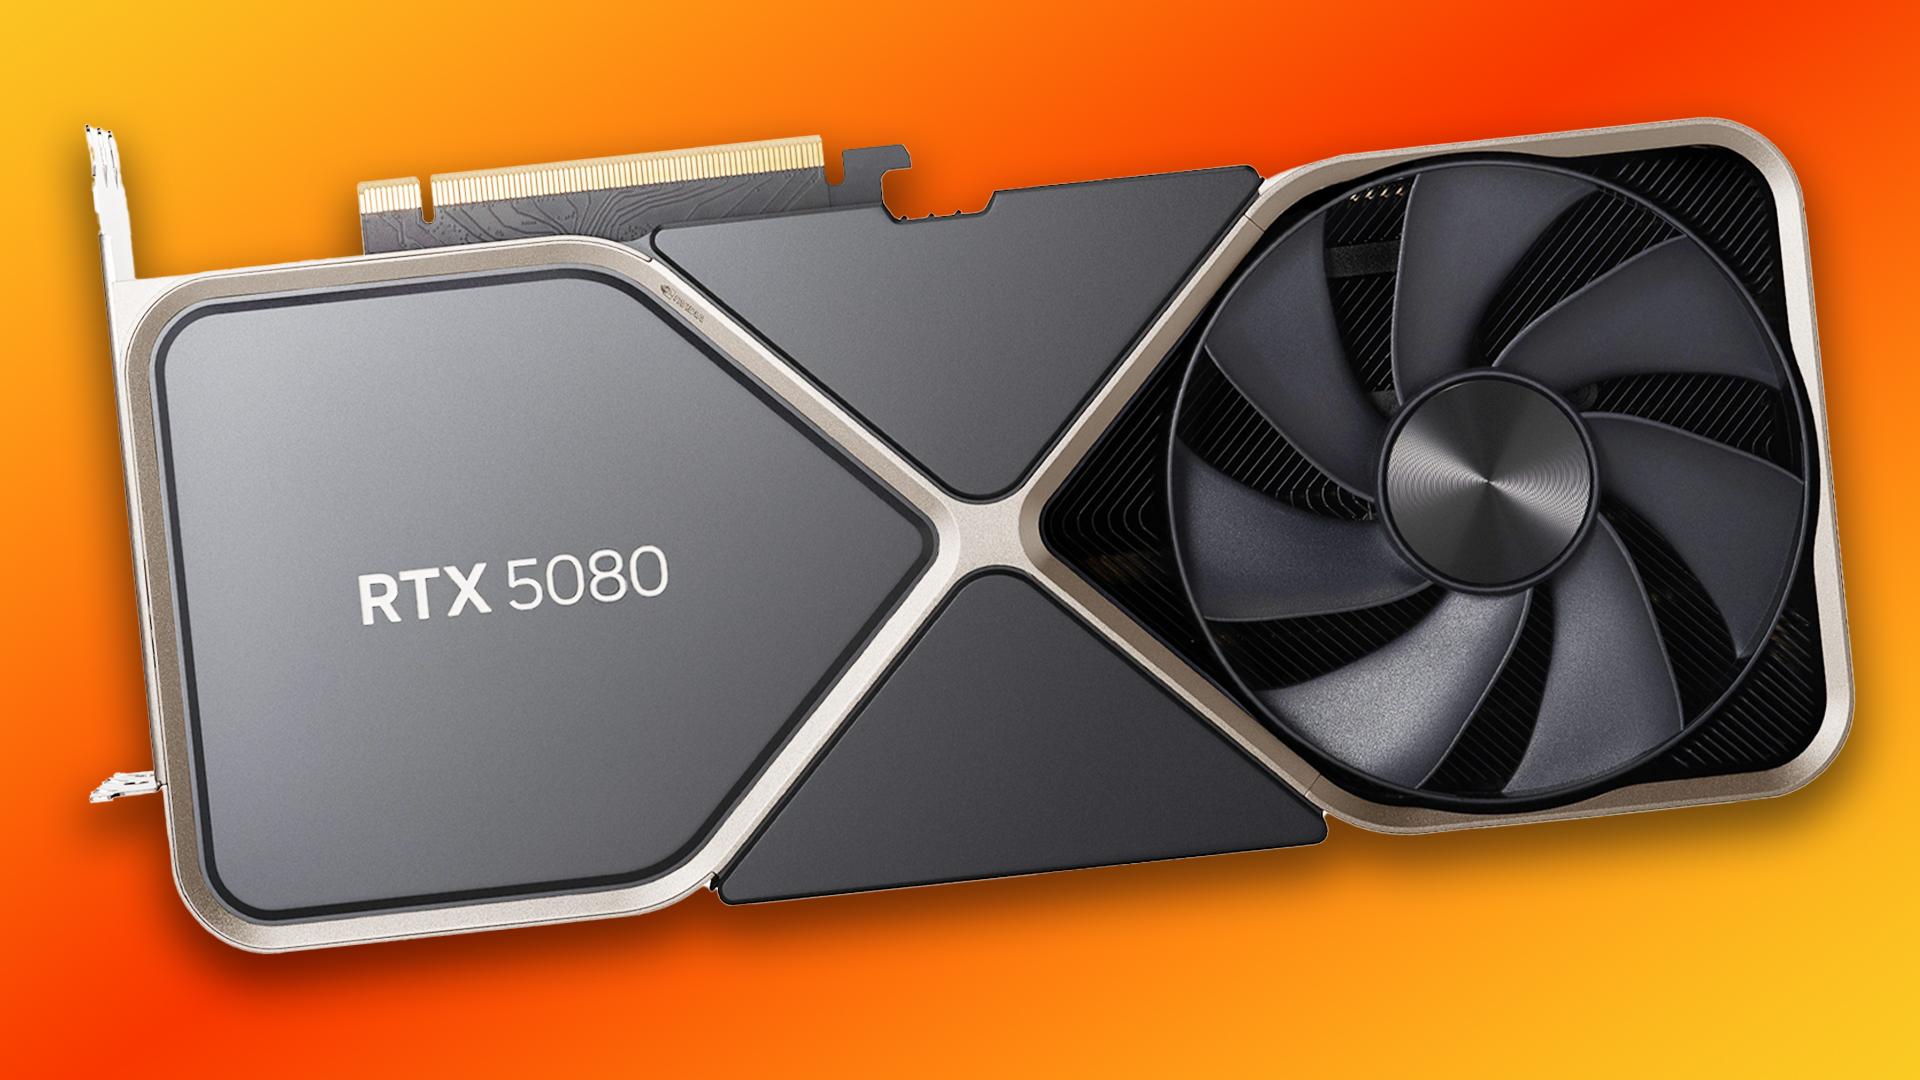 Nvidia RTX 5080 ar putea fi lansata inaintea modelului 5090, GPU-urile AI de generatie urmatoare urmand sa soseasca la sfarsitul anului 2025